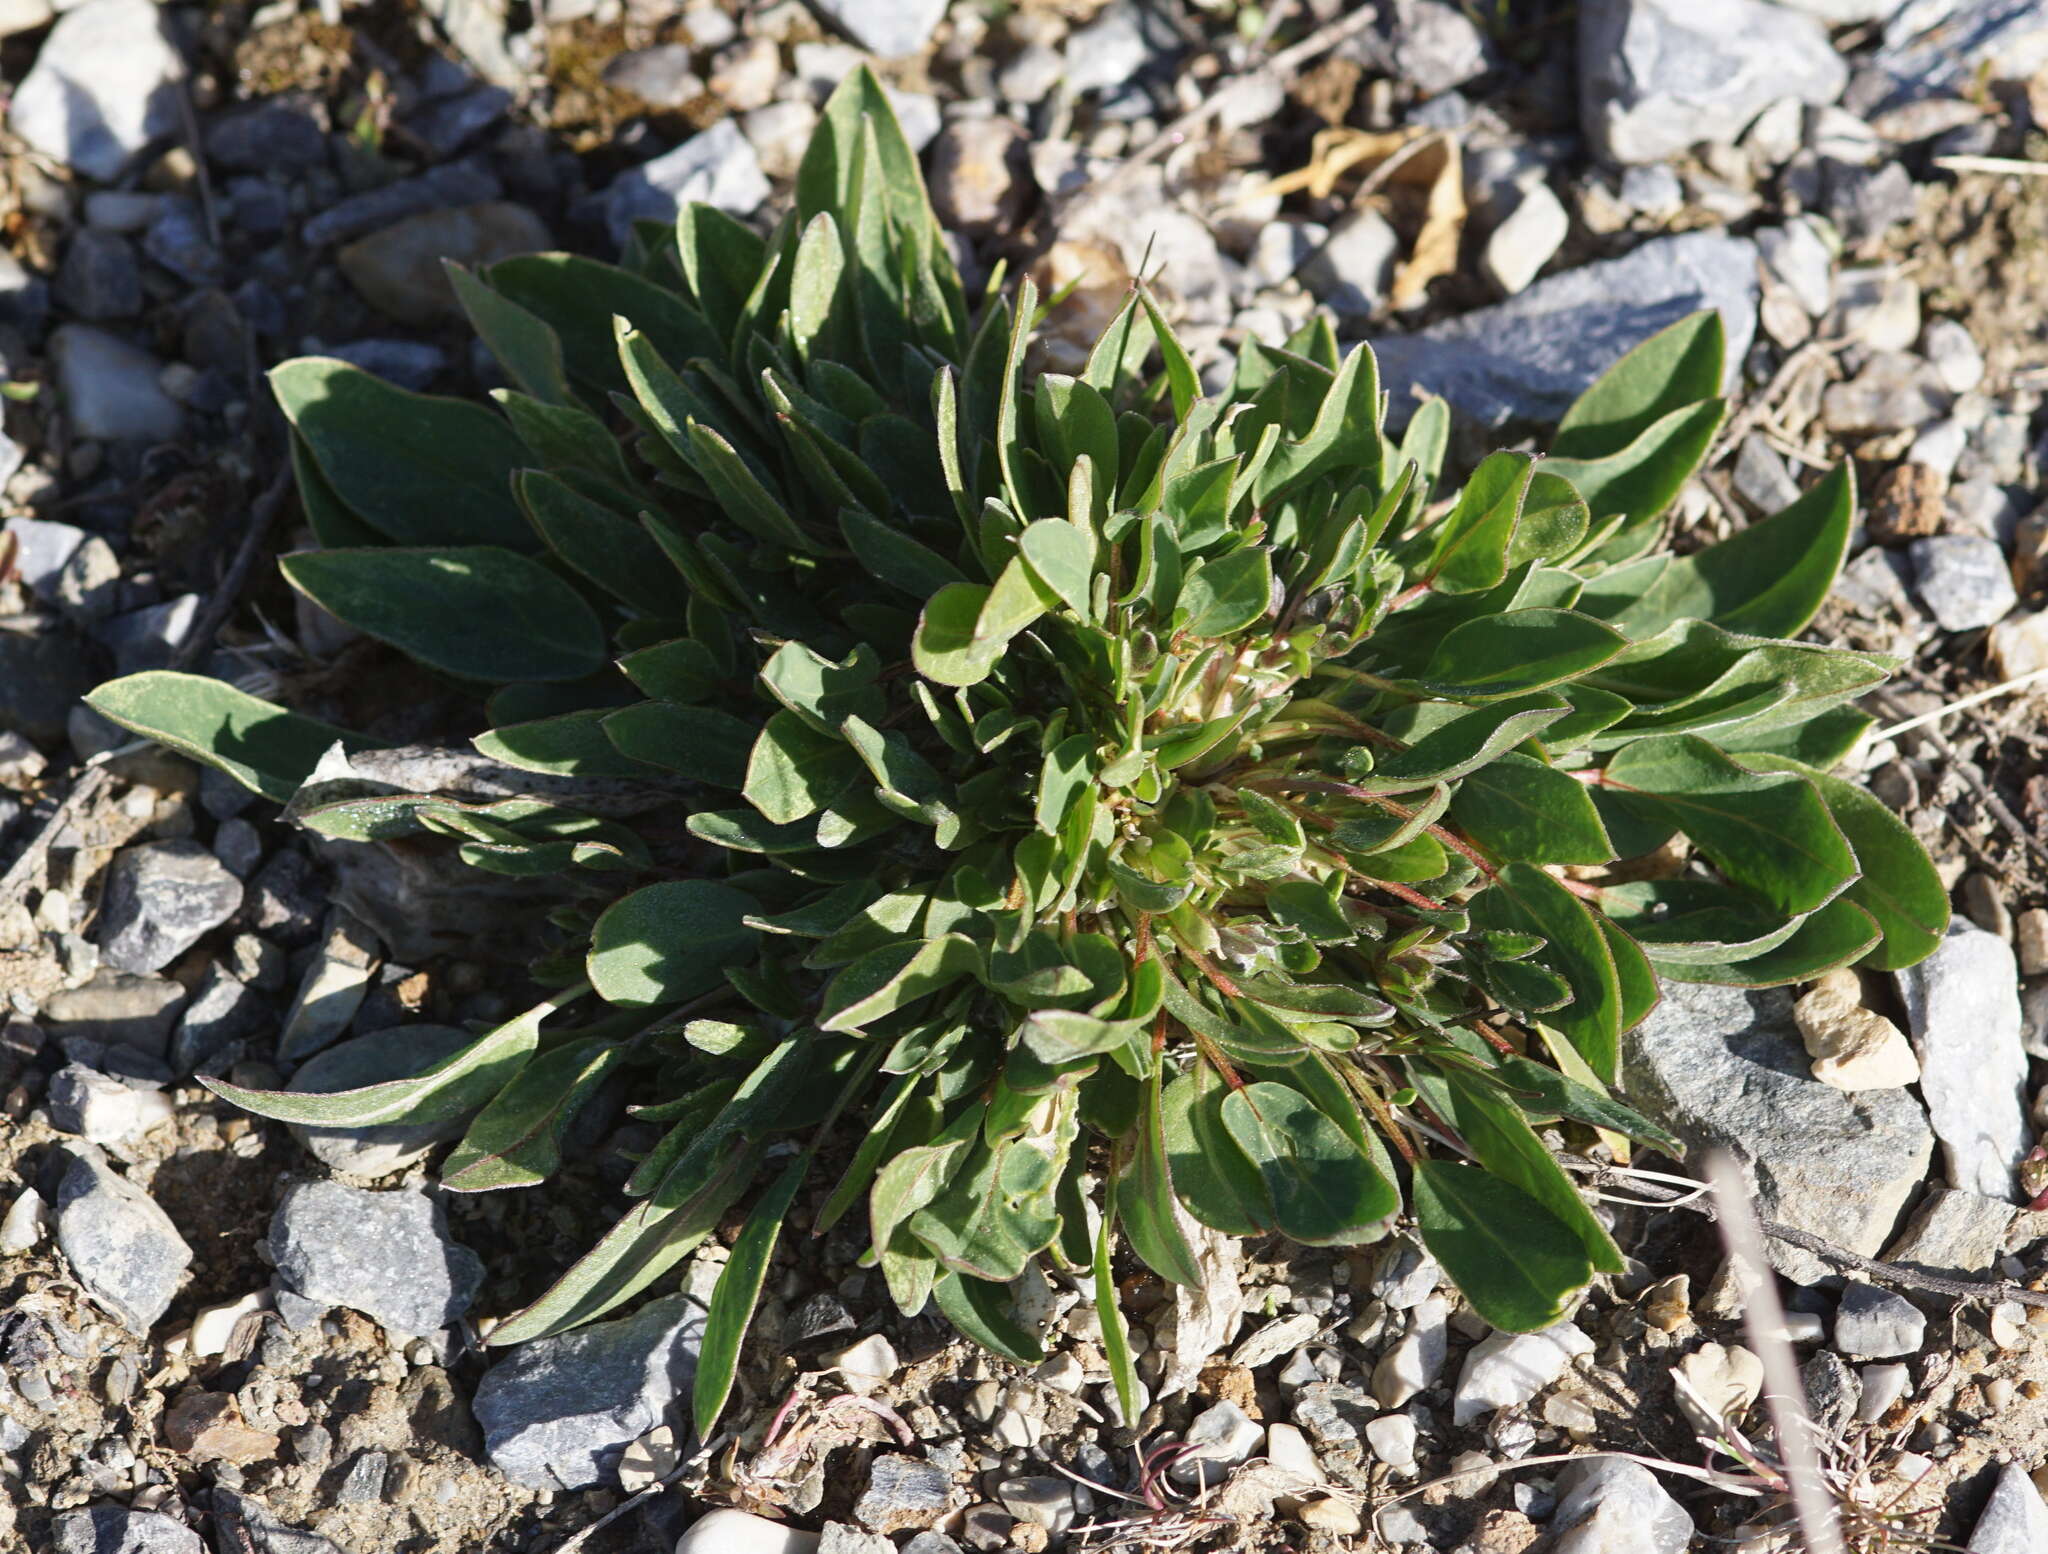 Plancia ëd Anthyllis vulneraria subsp. alpestris (Hegetschw.) Asch. & Graebn.